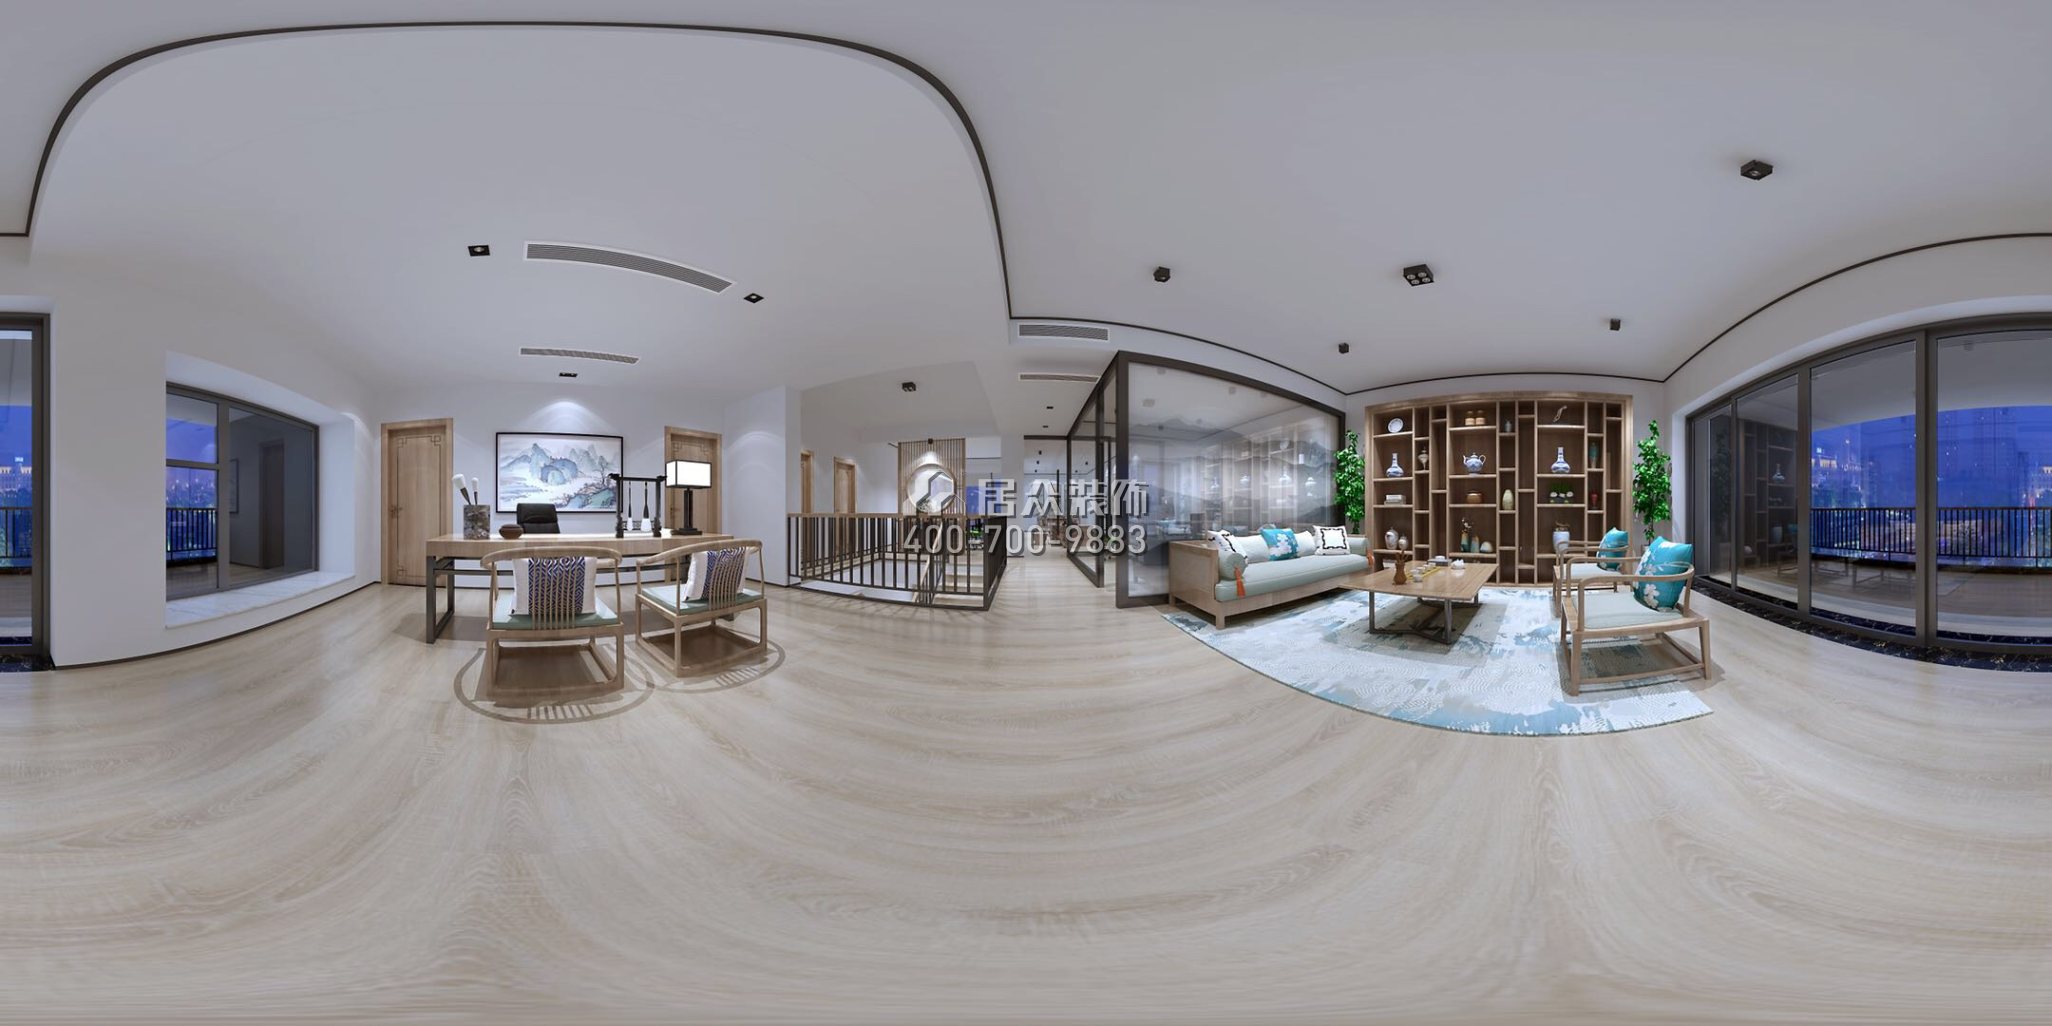 懿德軒560平方米中式風格復式戶型茶室裝修效果圖